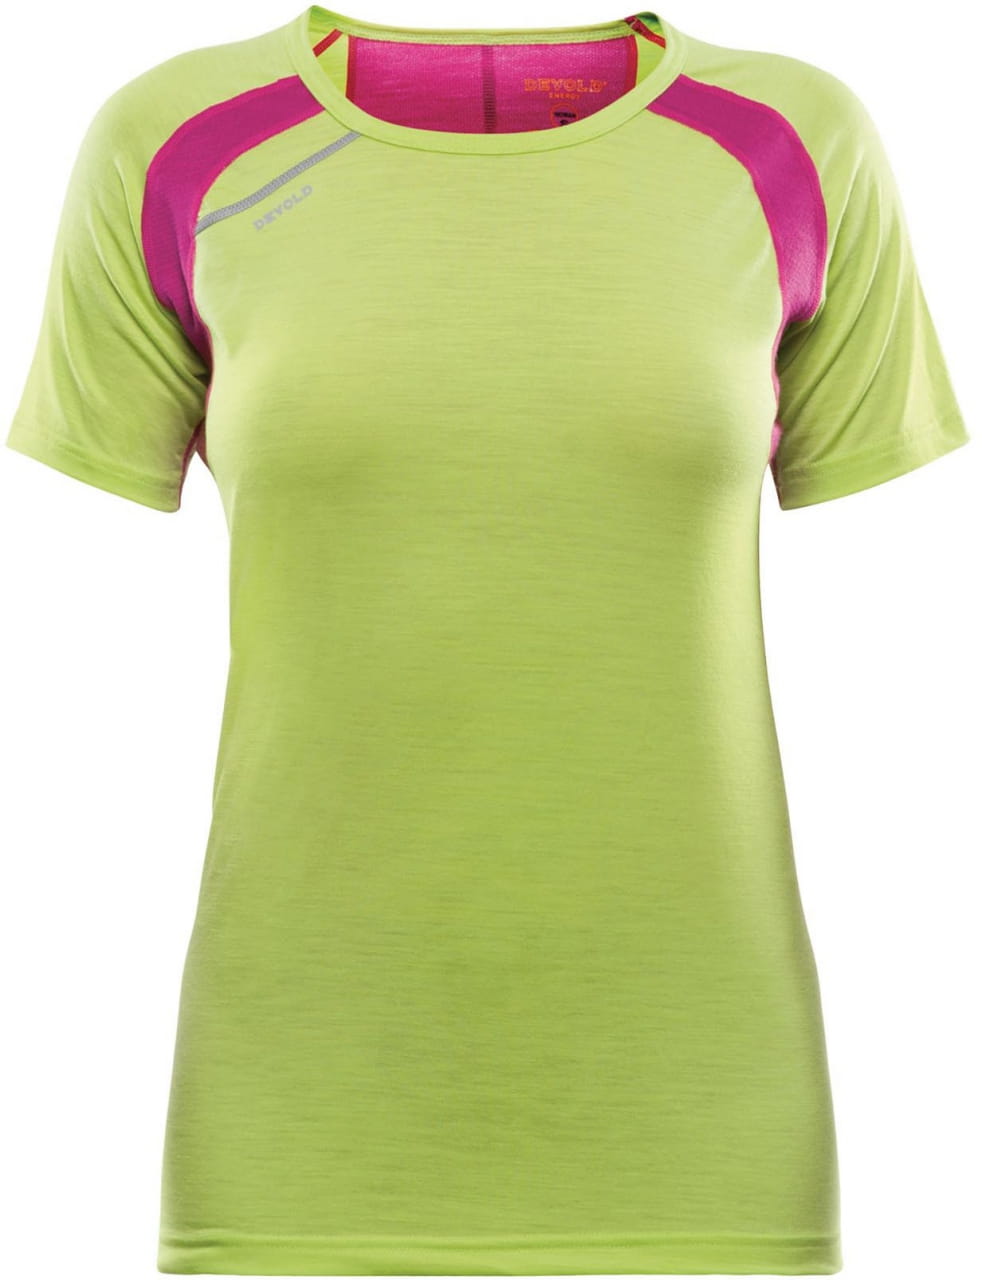 Sporthemd für Frauen Devold Energy Woman T-Shirt